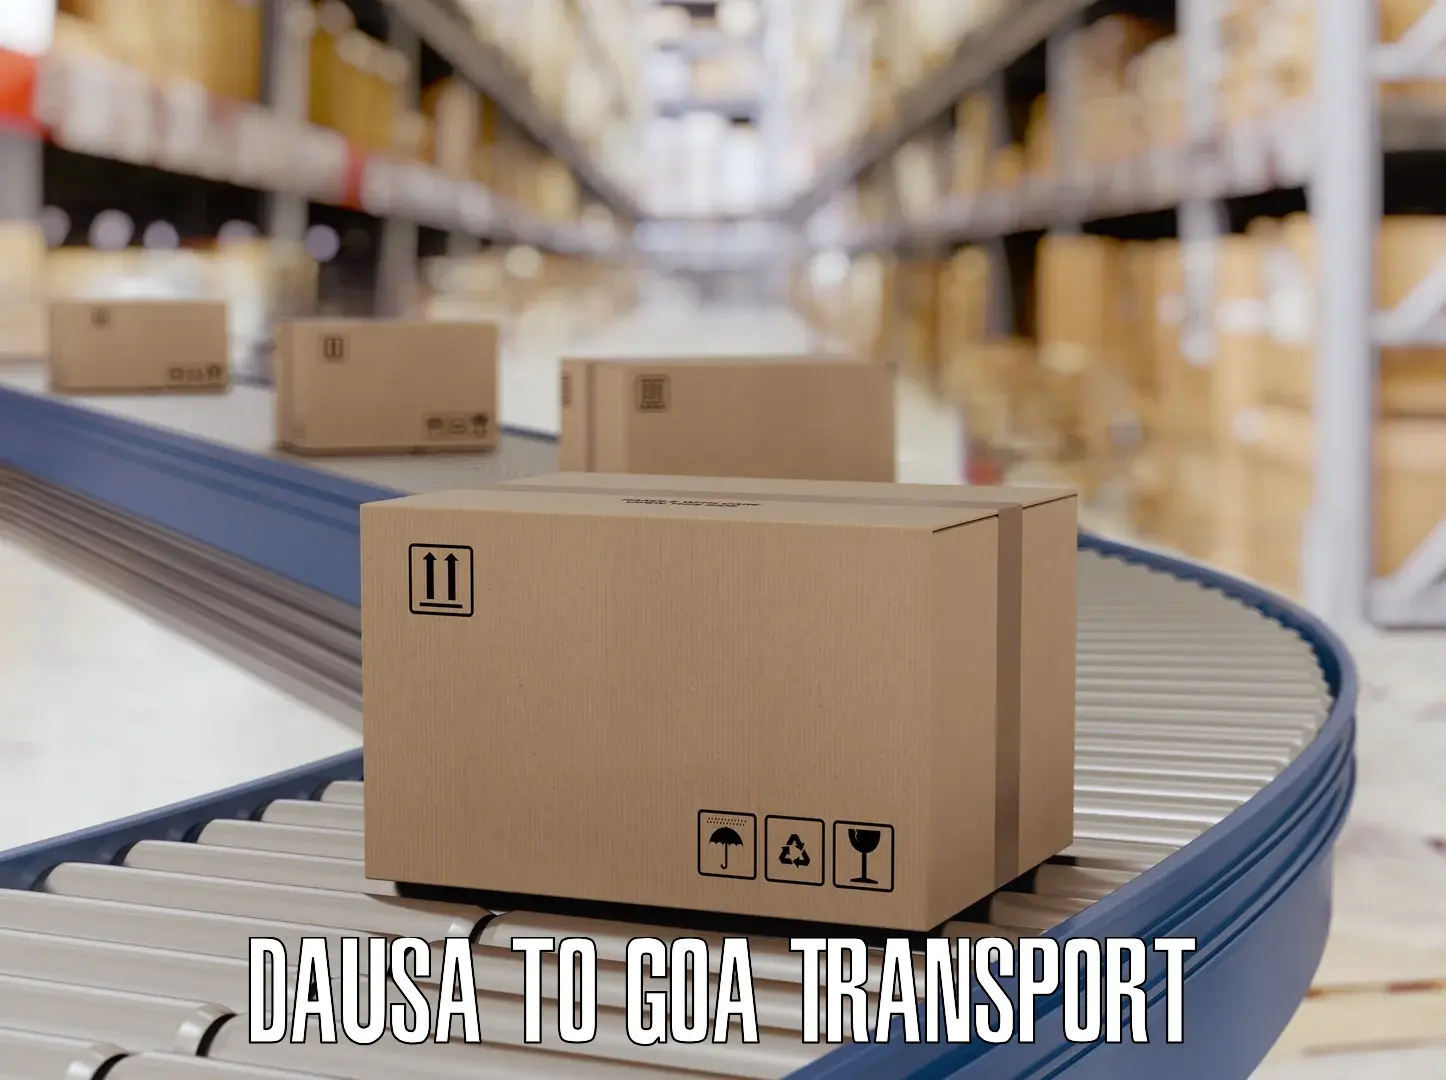 Cargo transportation services Dausa to Ponda